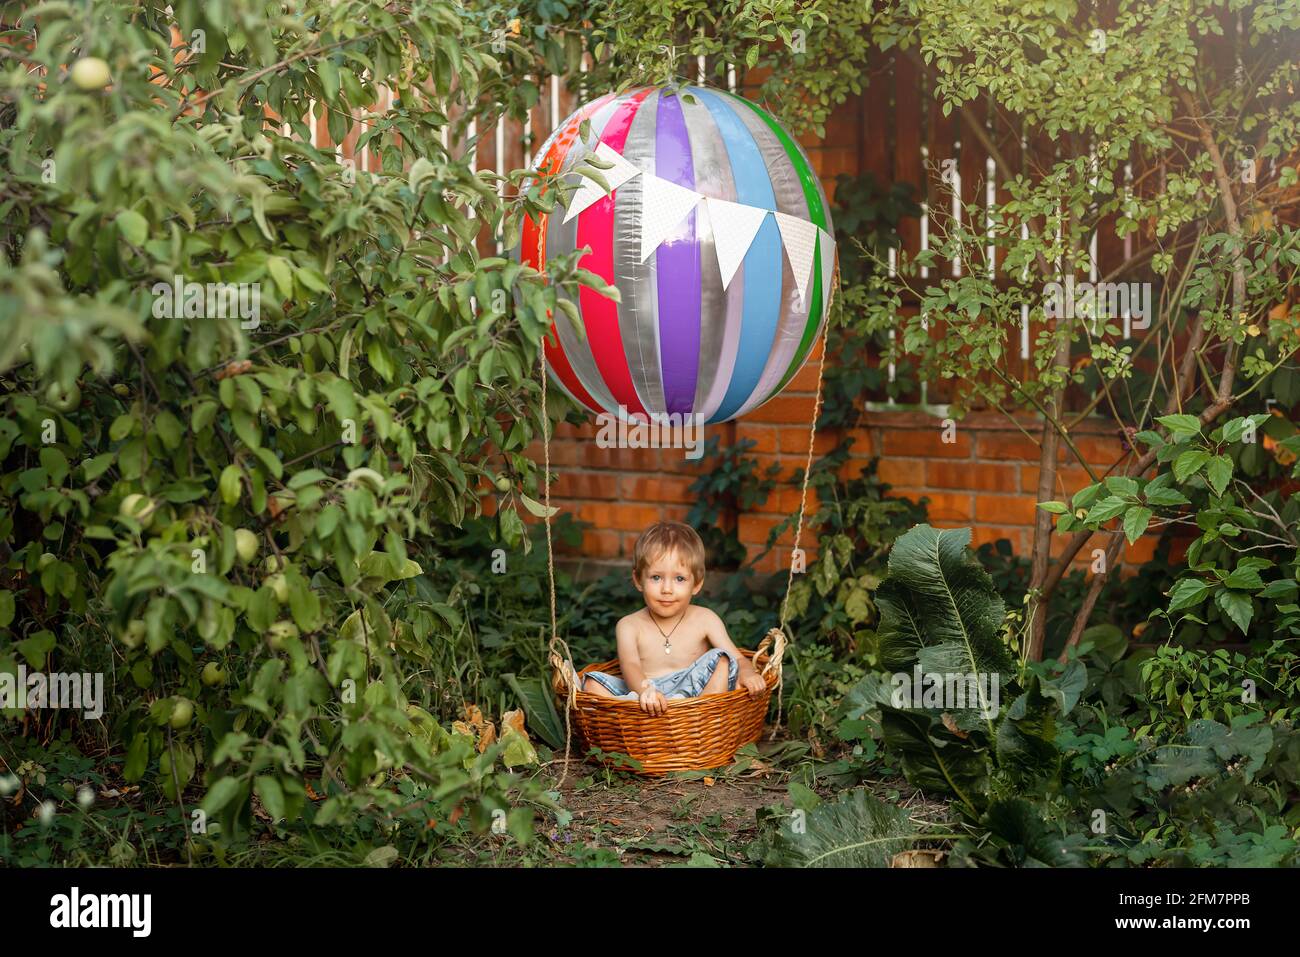 Cute child on hot air balloon. Kid riding hot air balloon. Stock Photo